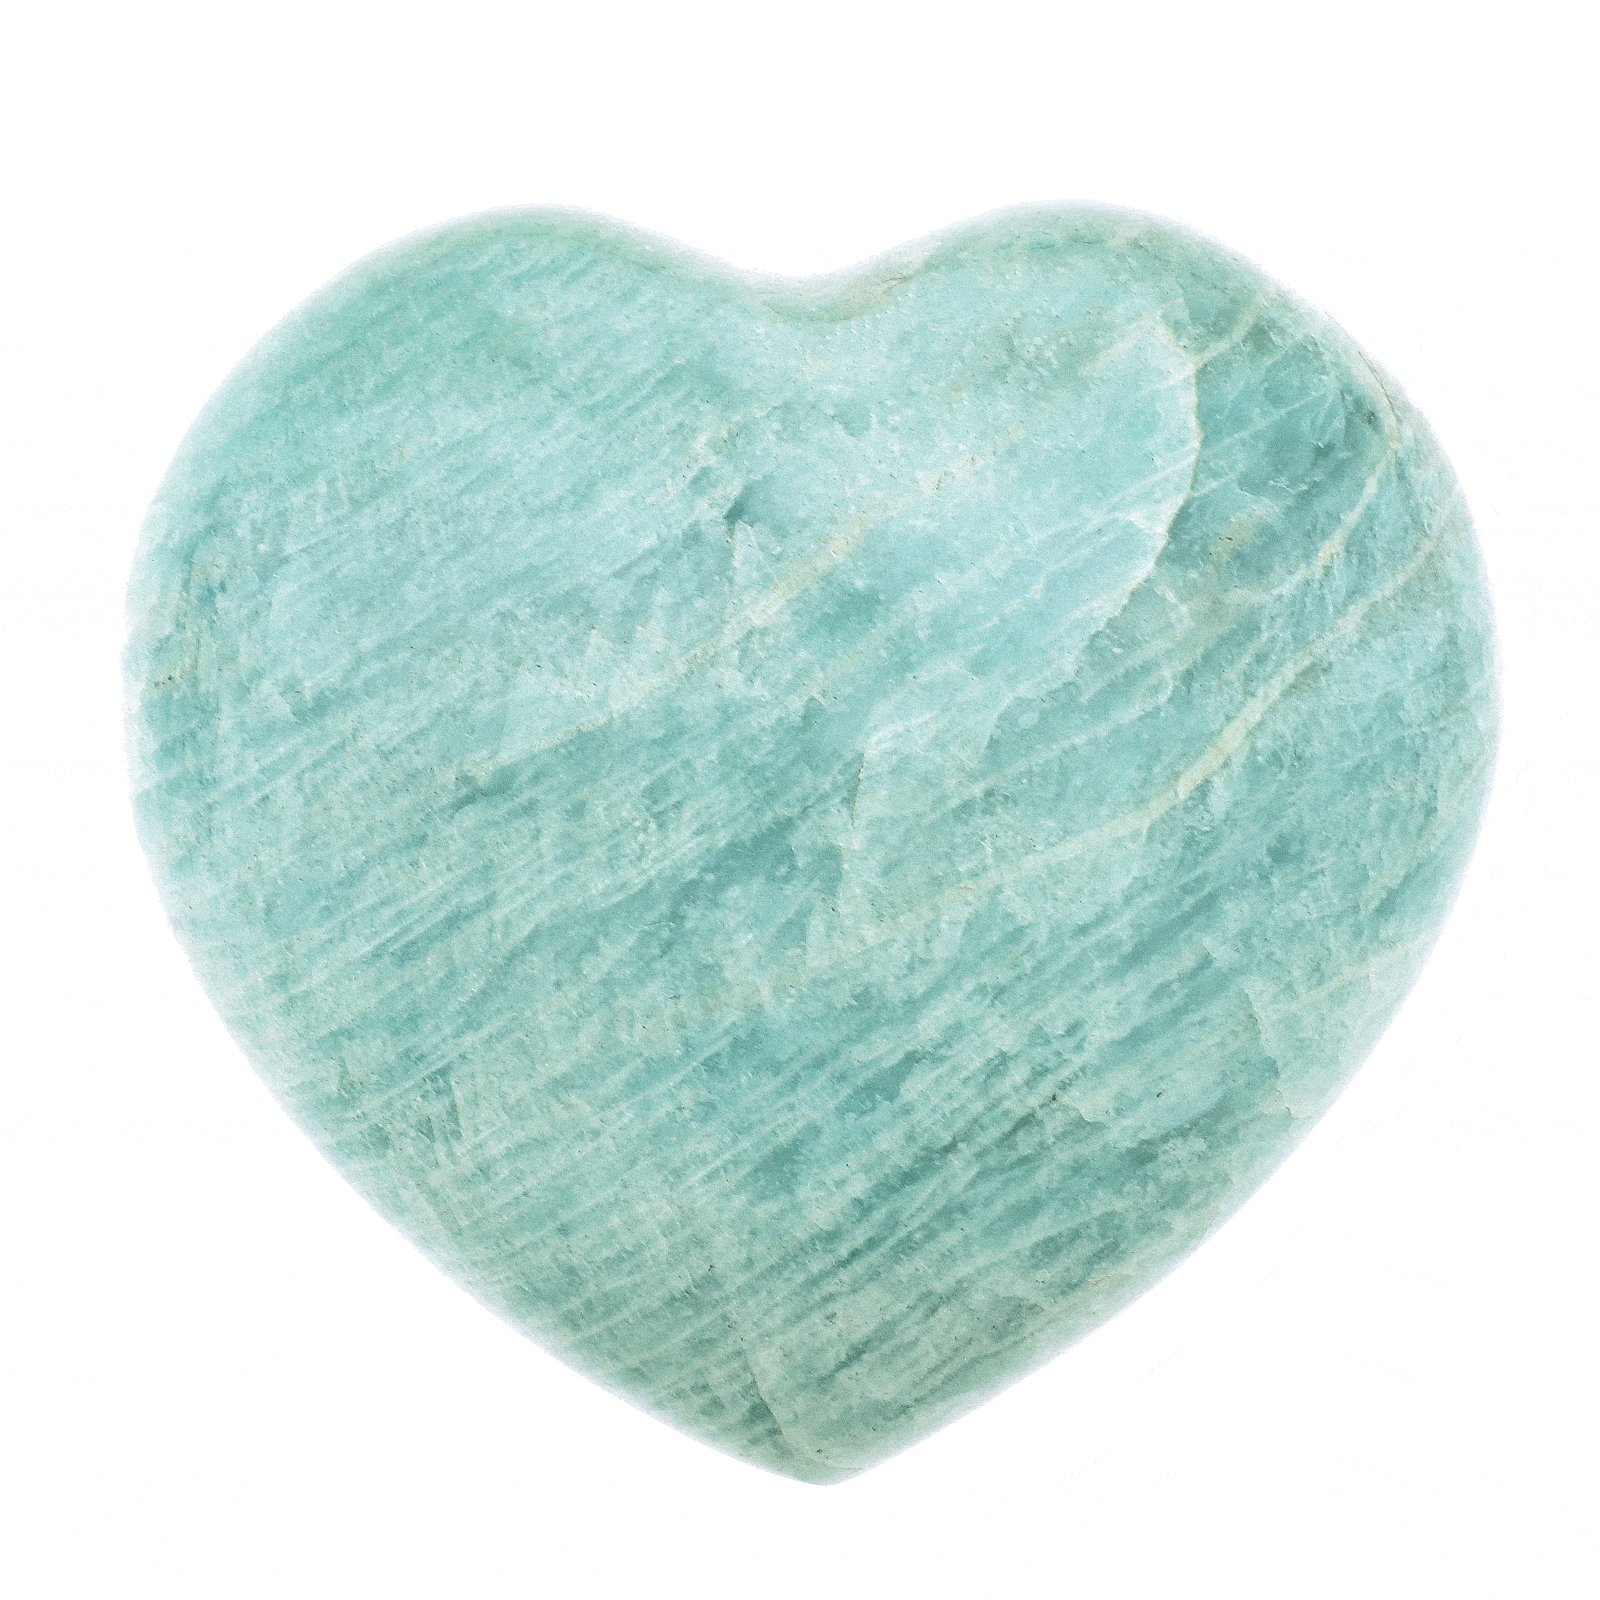 Φυσική πέτρα Αμαζονίτη σκαλισμένη στη μορφή καρδιάς, μεγέθους 7cm. Αγοράστε online shop.